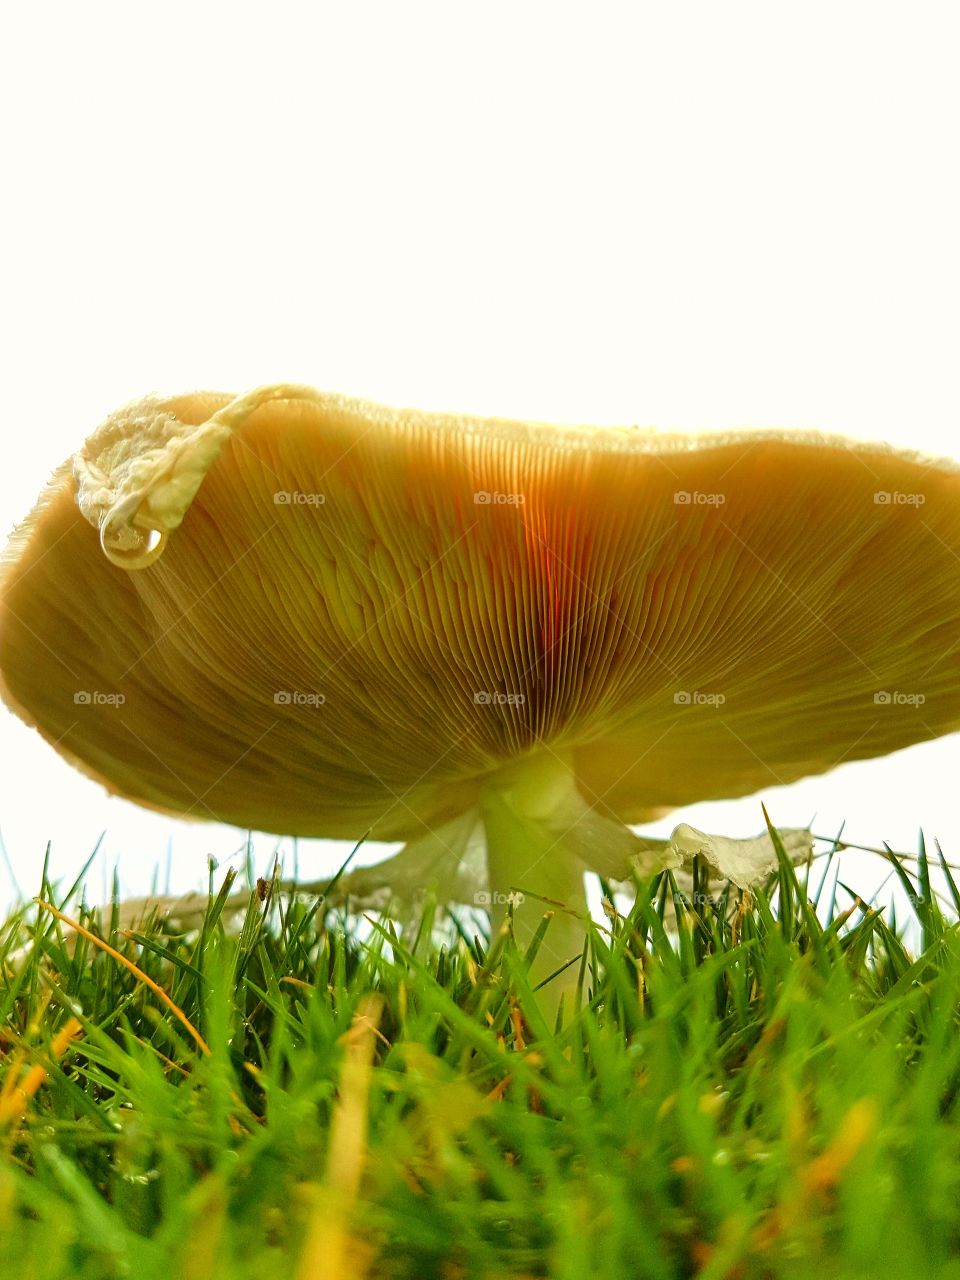 magic morning mushroom